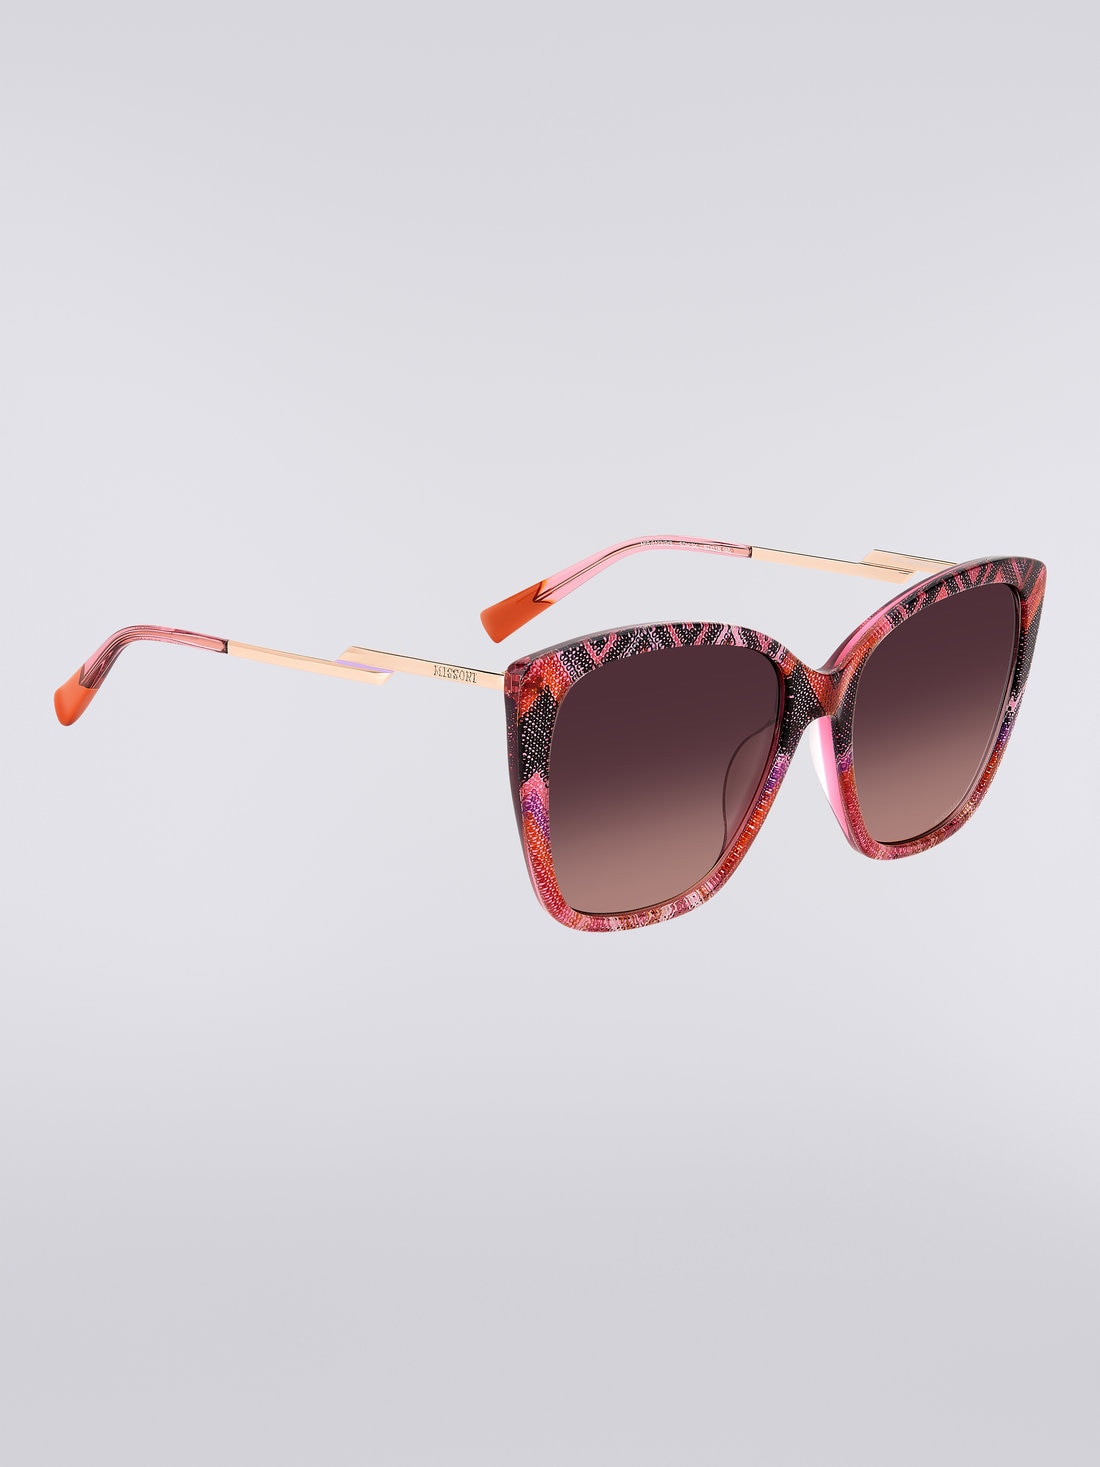 Missoni Dna Acetate Sunglasses, Multicoloured  - 8051575840234 - 2